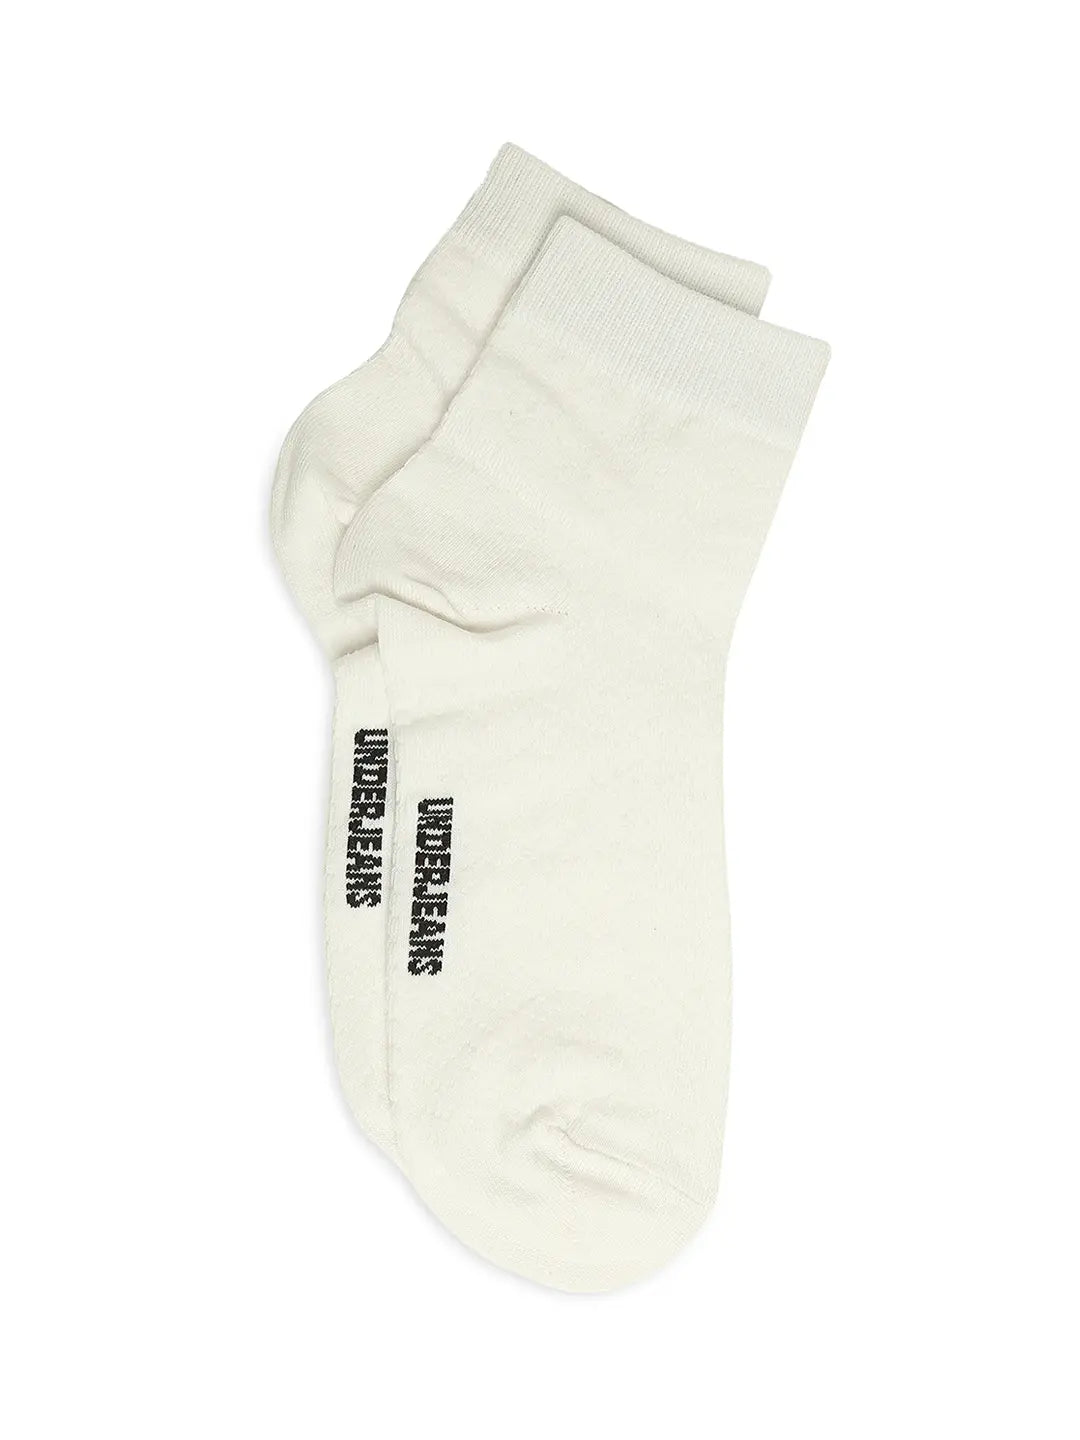 Men Premium White & Anthra Melange Ankle Length Socks - Pack Of 2- Underjeans by Spykar